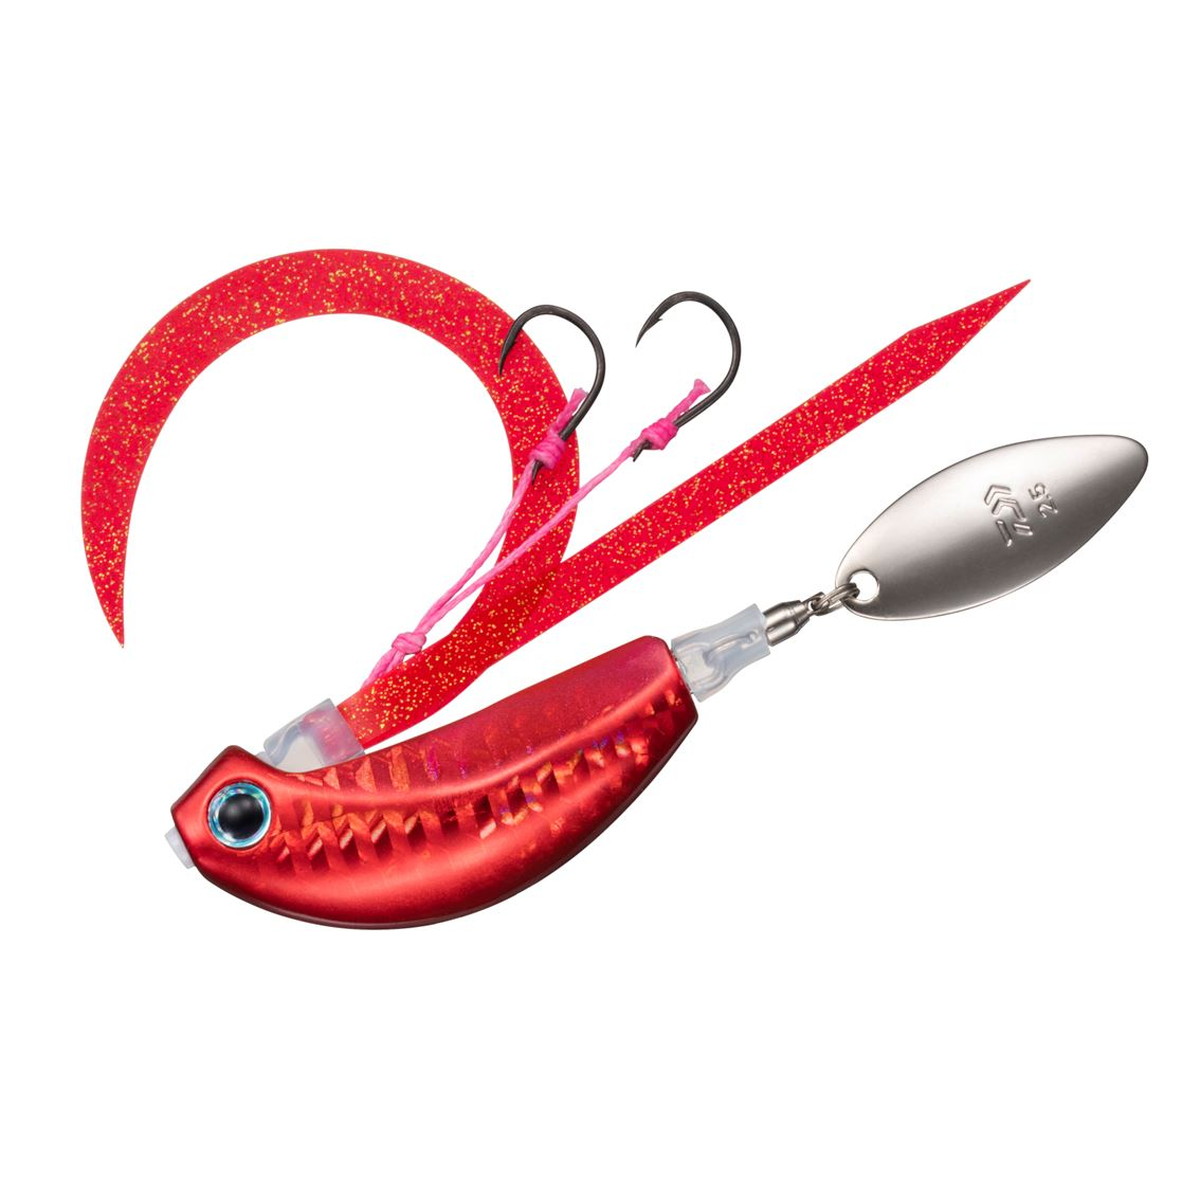 DAIWA（釣り） 紅牙ブレードブレイカー TG 玉神 80g PH紅牙レッド メタルジグの商品画像